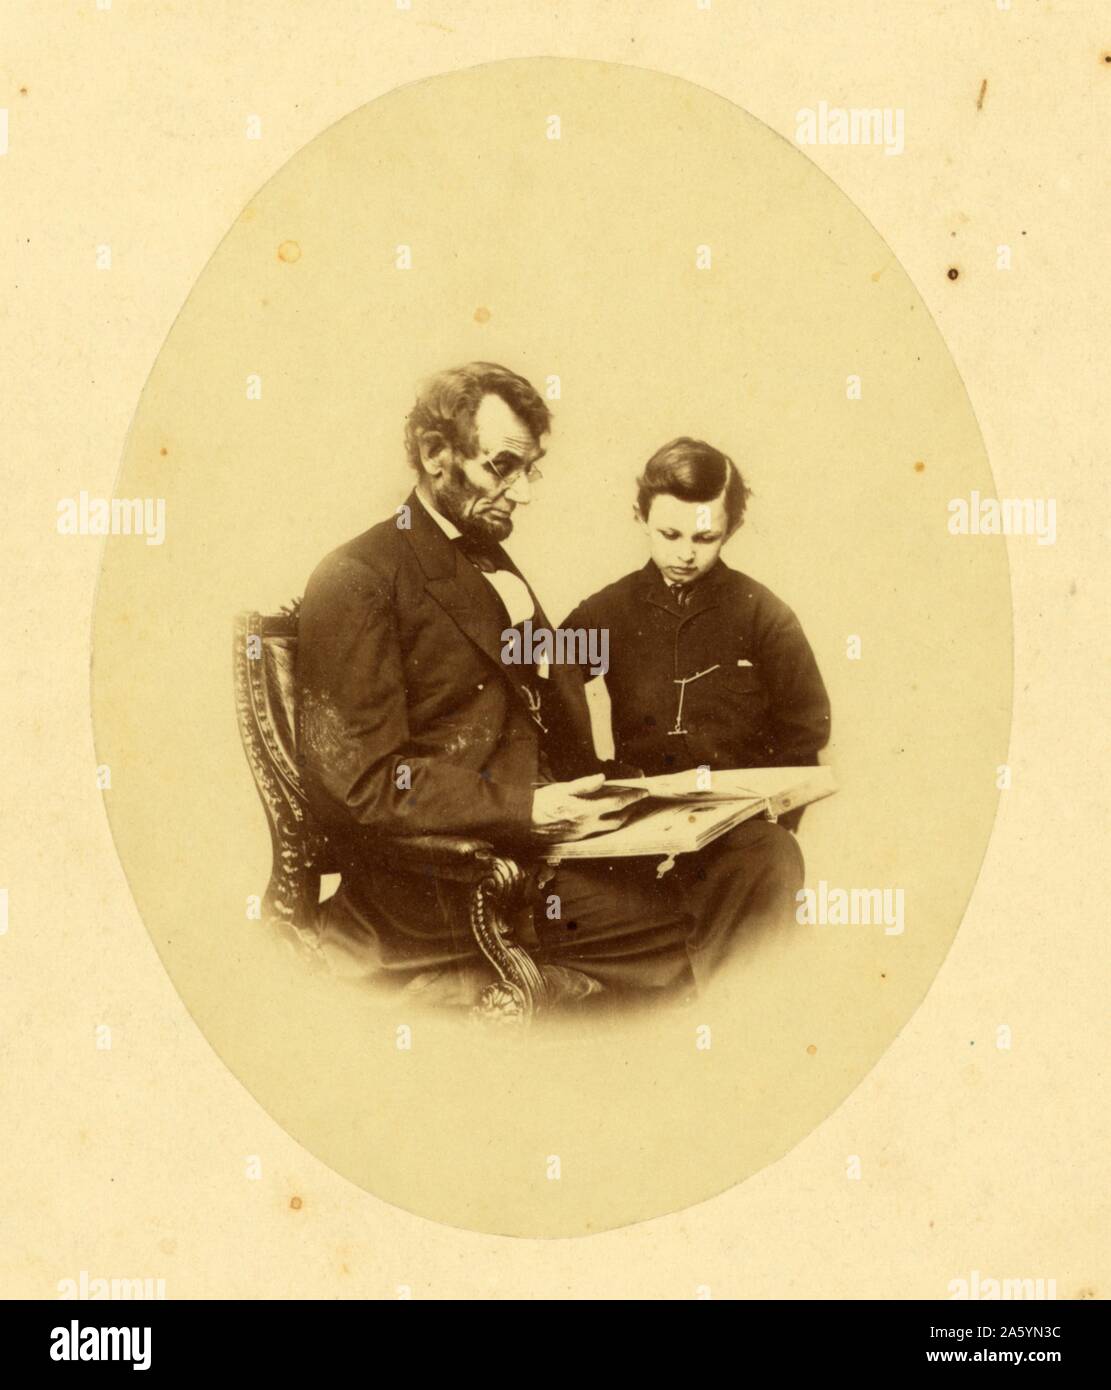 Präsident Abraham Lincoln 1864. 16. Präsident der Vereinigten Staaten von Amerika mit seinem Sohn Tad Lincoln. Stockfoto